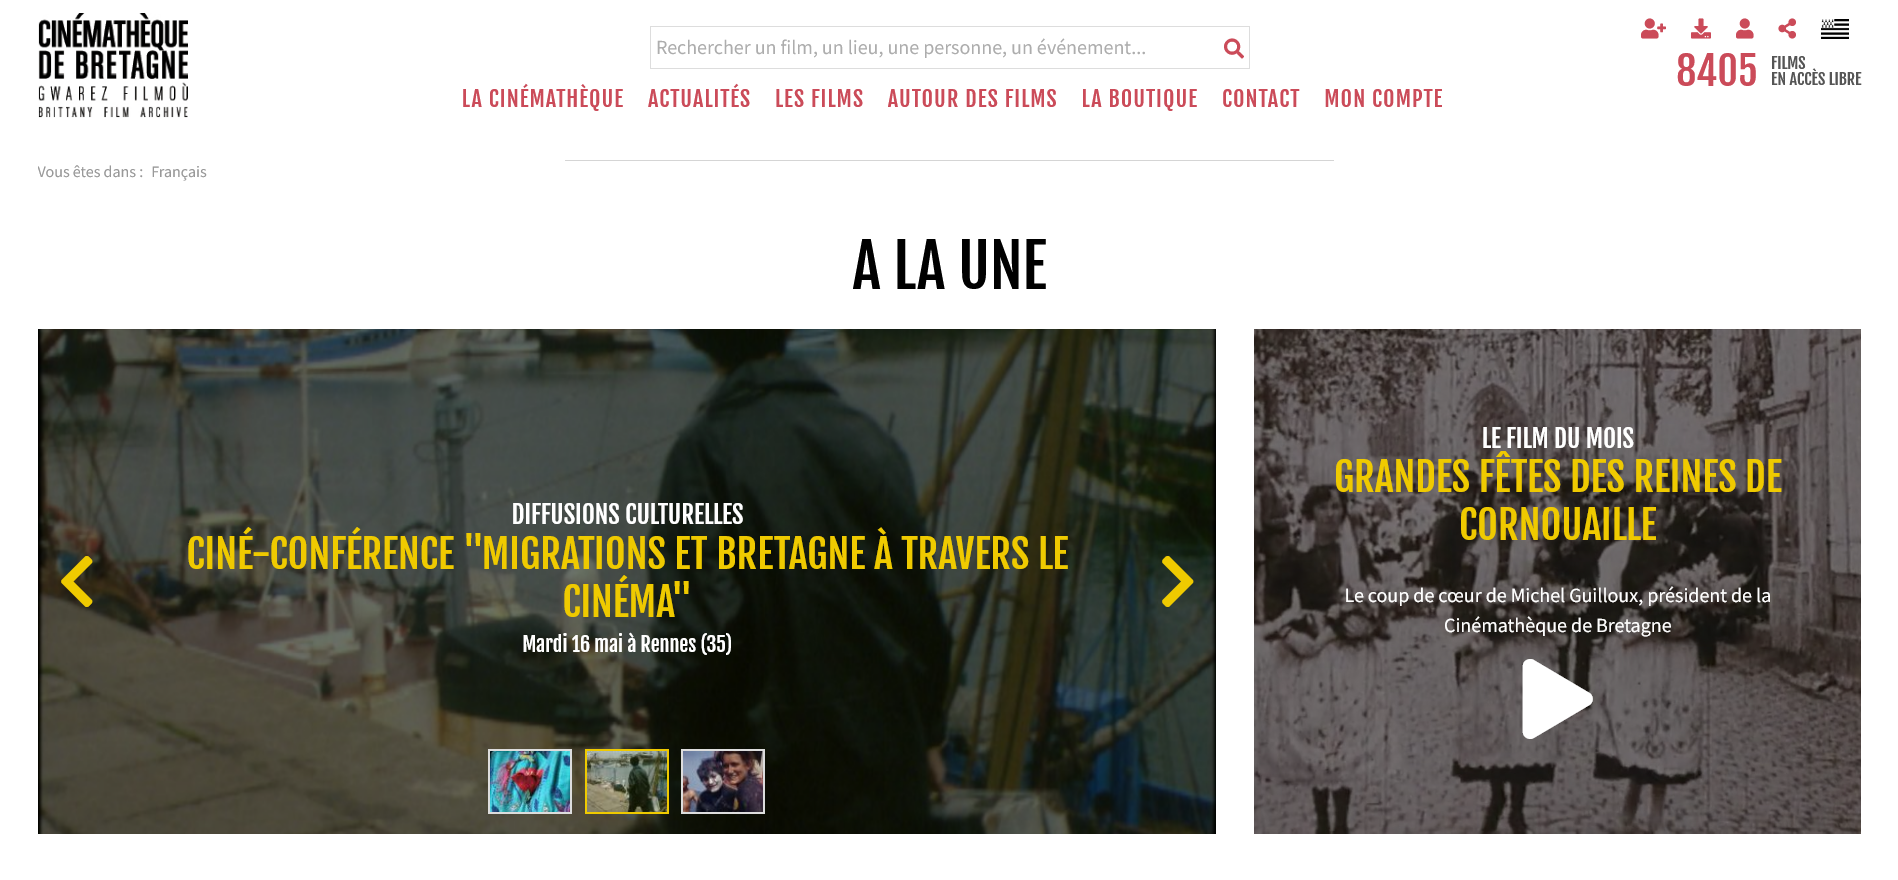 Lien vers le site internet de la Cinémathèque de Bretagne